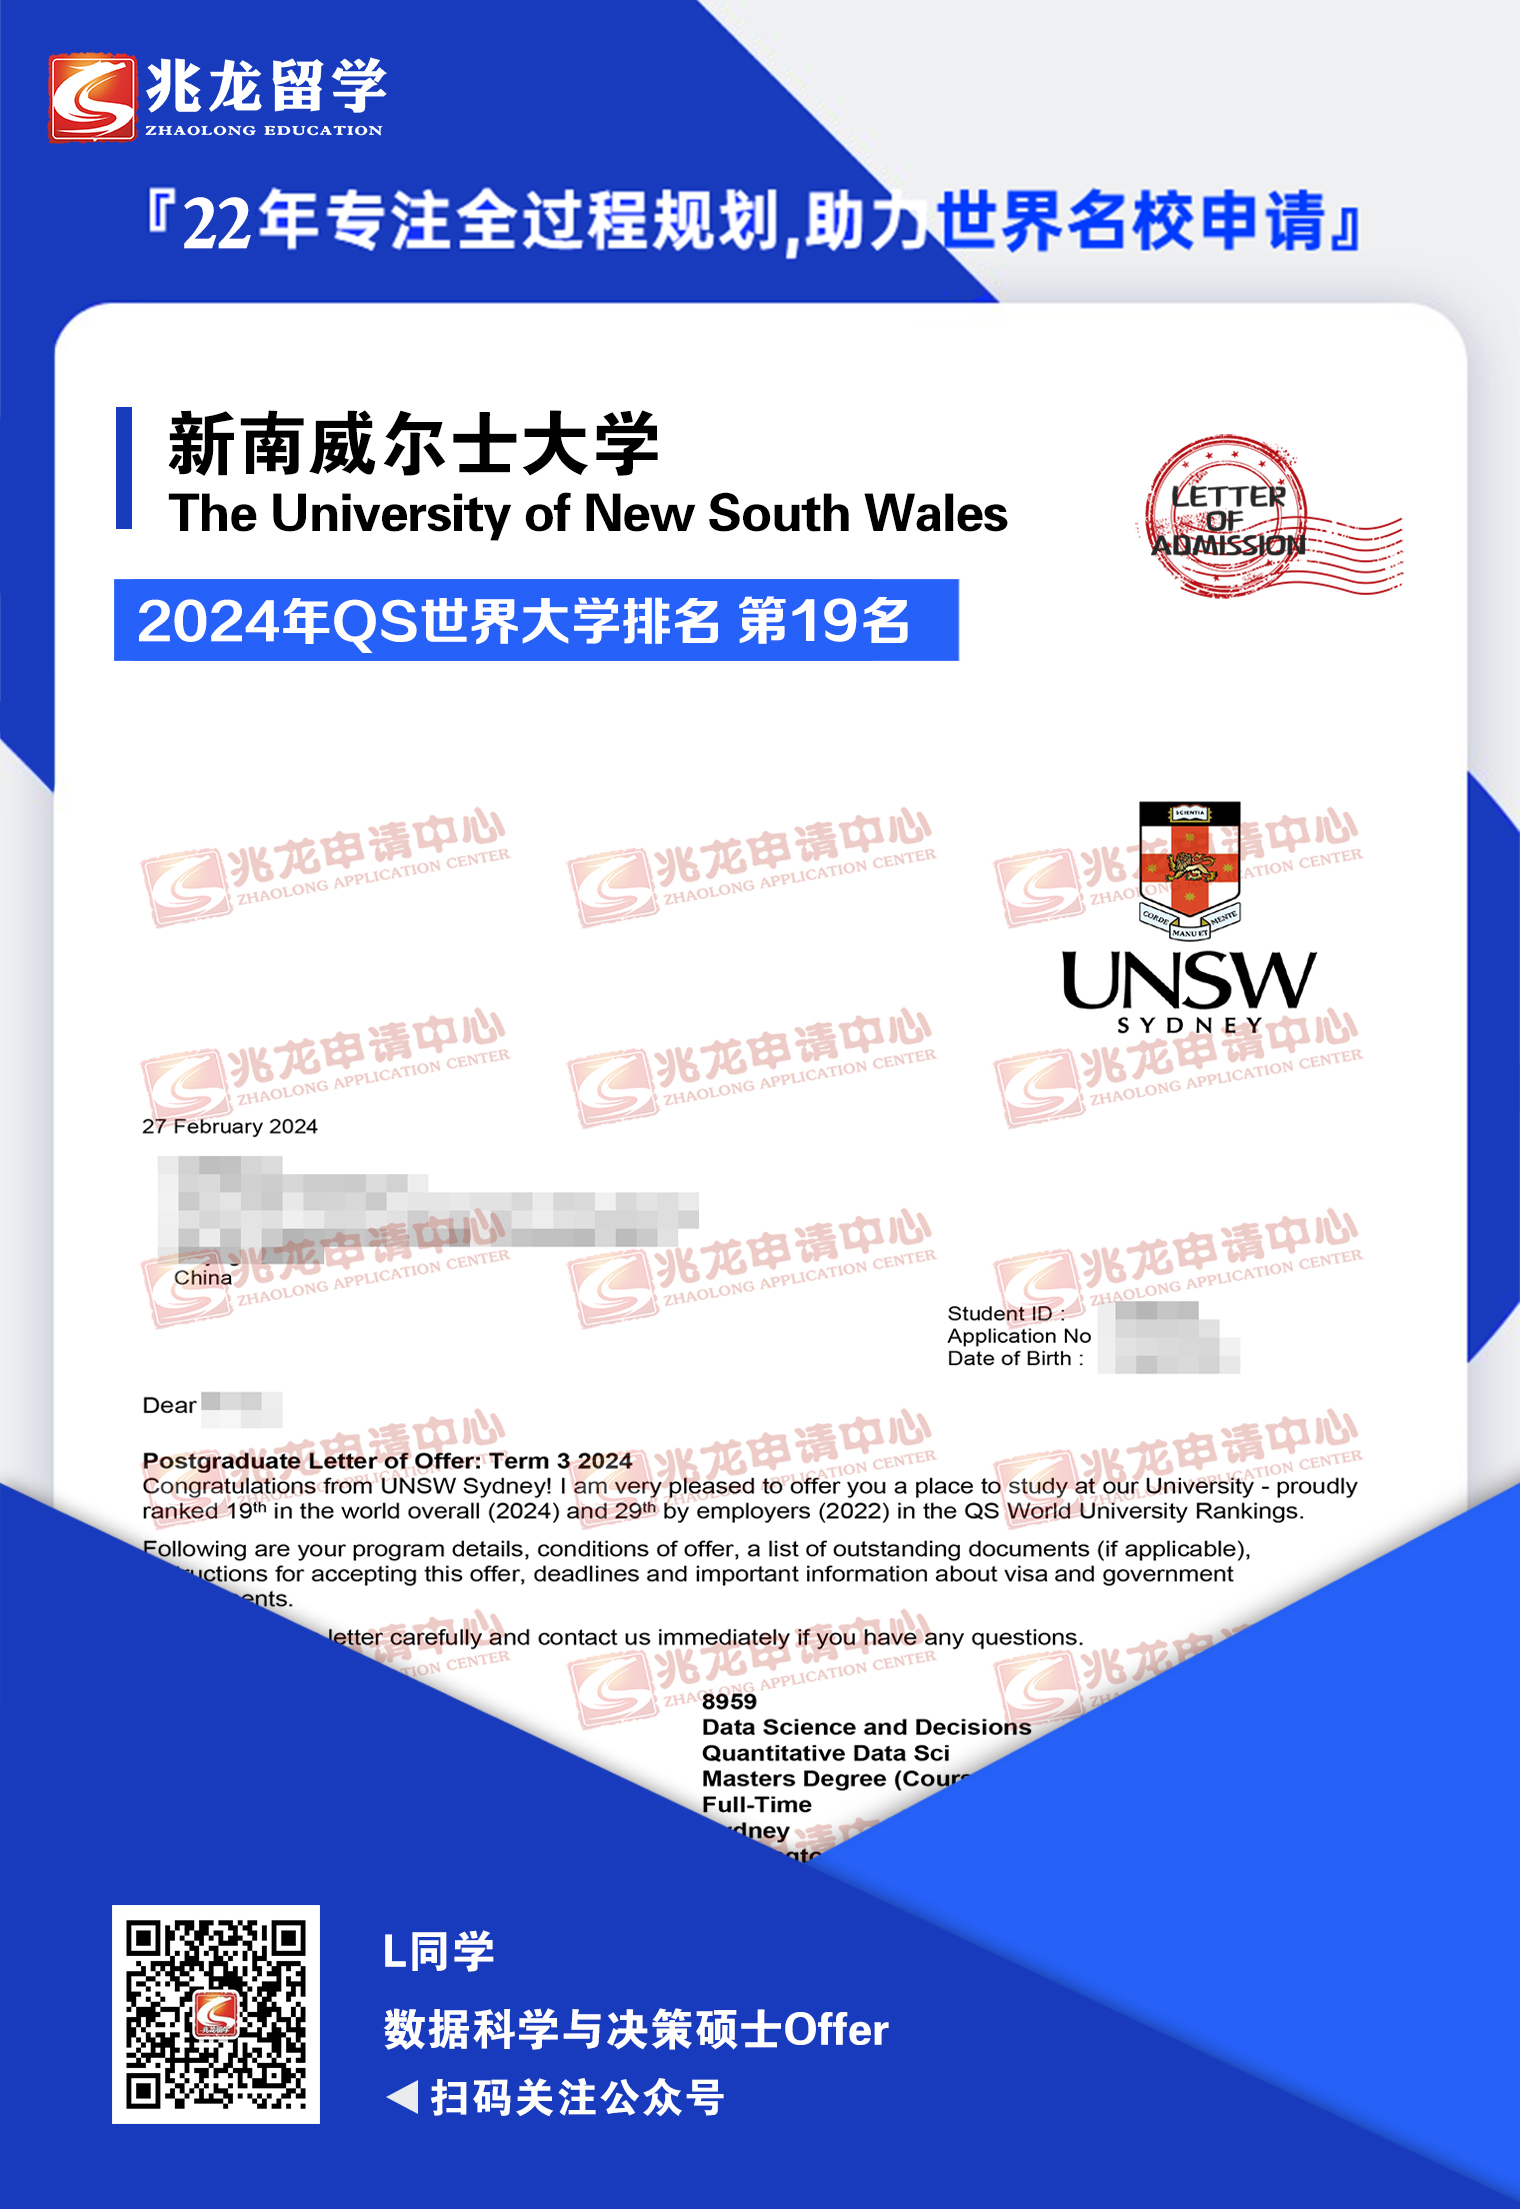 刘liyang澳洲新南威尔士大学数据科学与决策硕士offer-兆龙留学.jpg